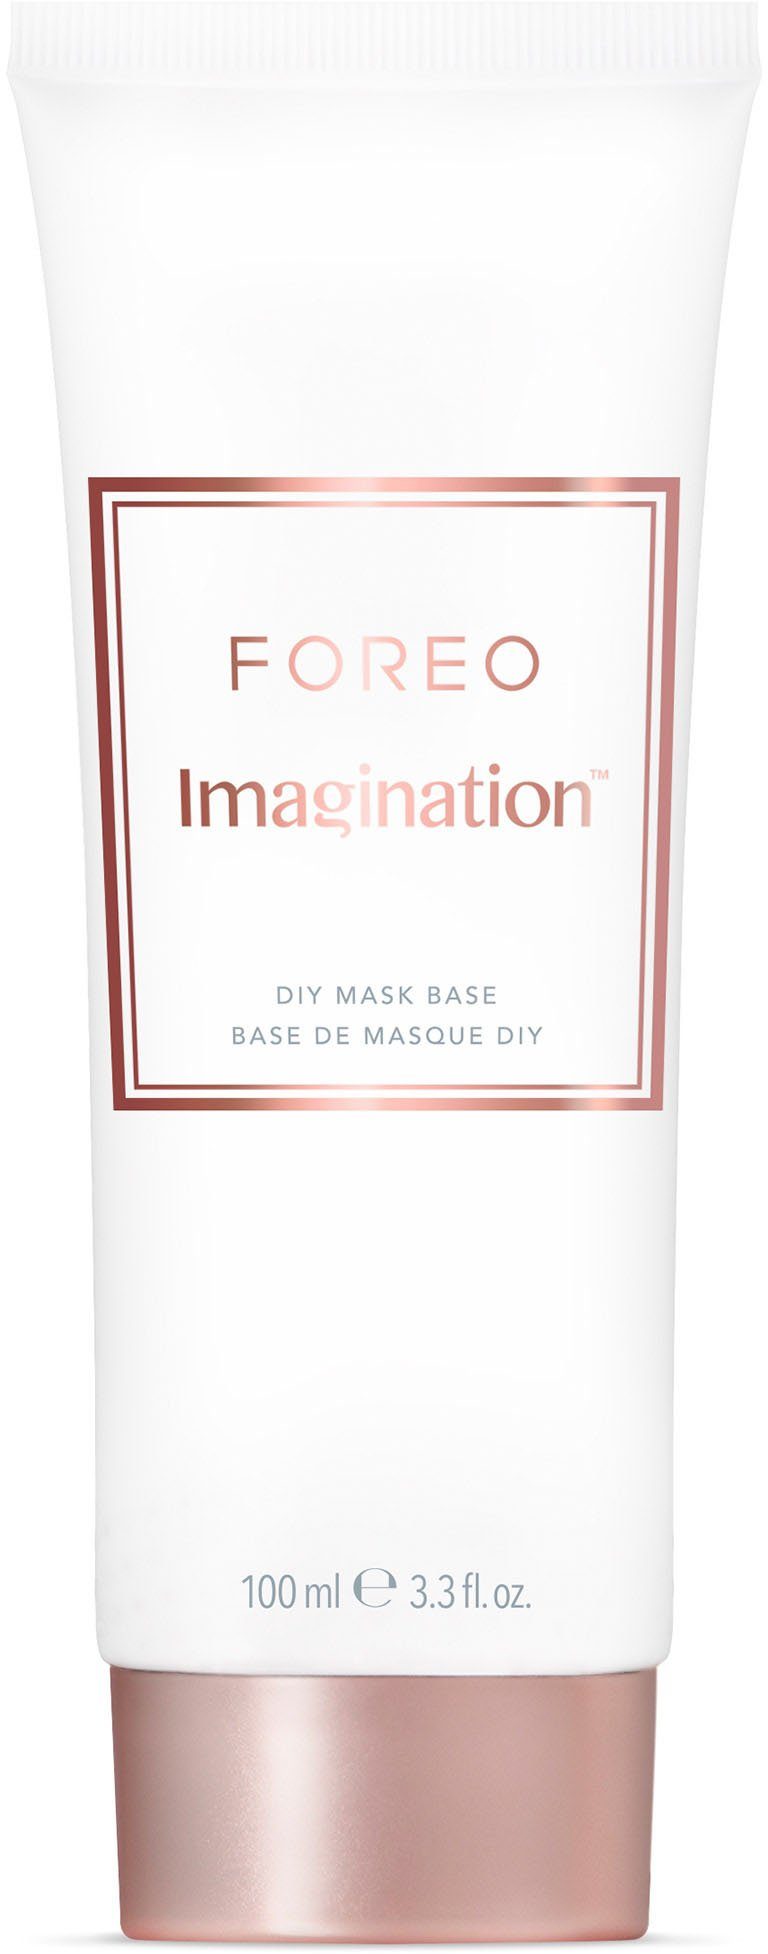 FOREO Base Mask DIY Imagination Gesichtsmaske 100ml